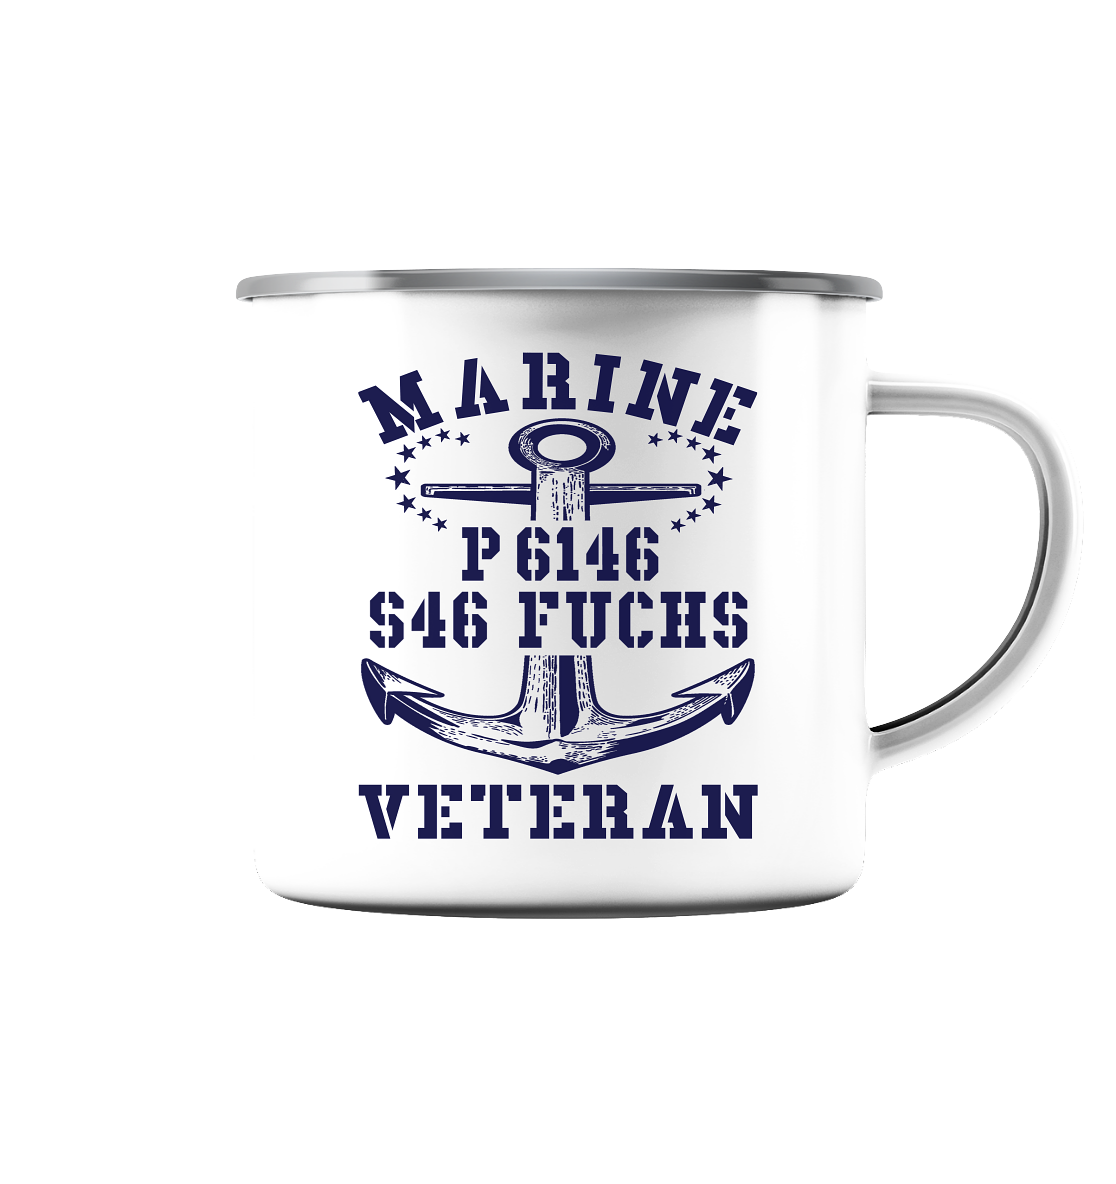 P6146 S46 FUCHS Marine Veteran - Emaille Tasse (Silber)